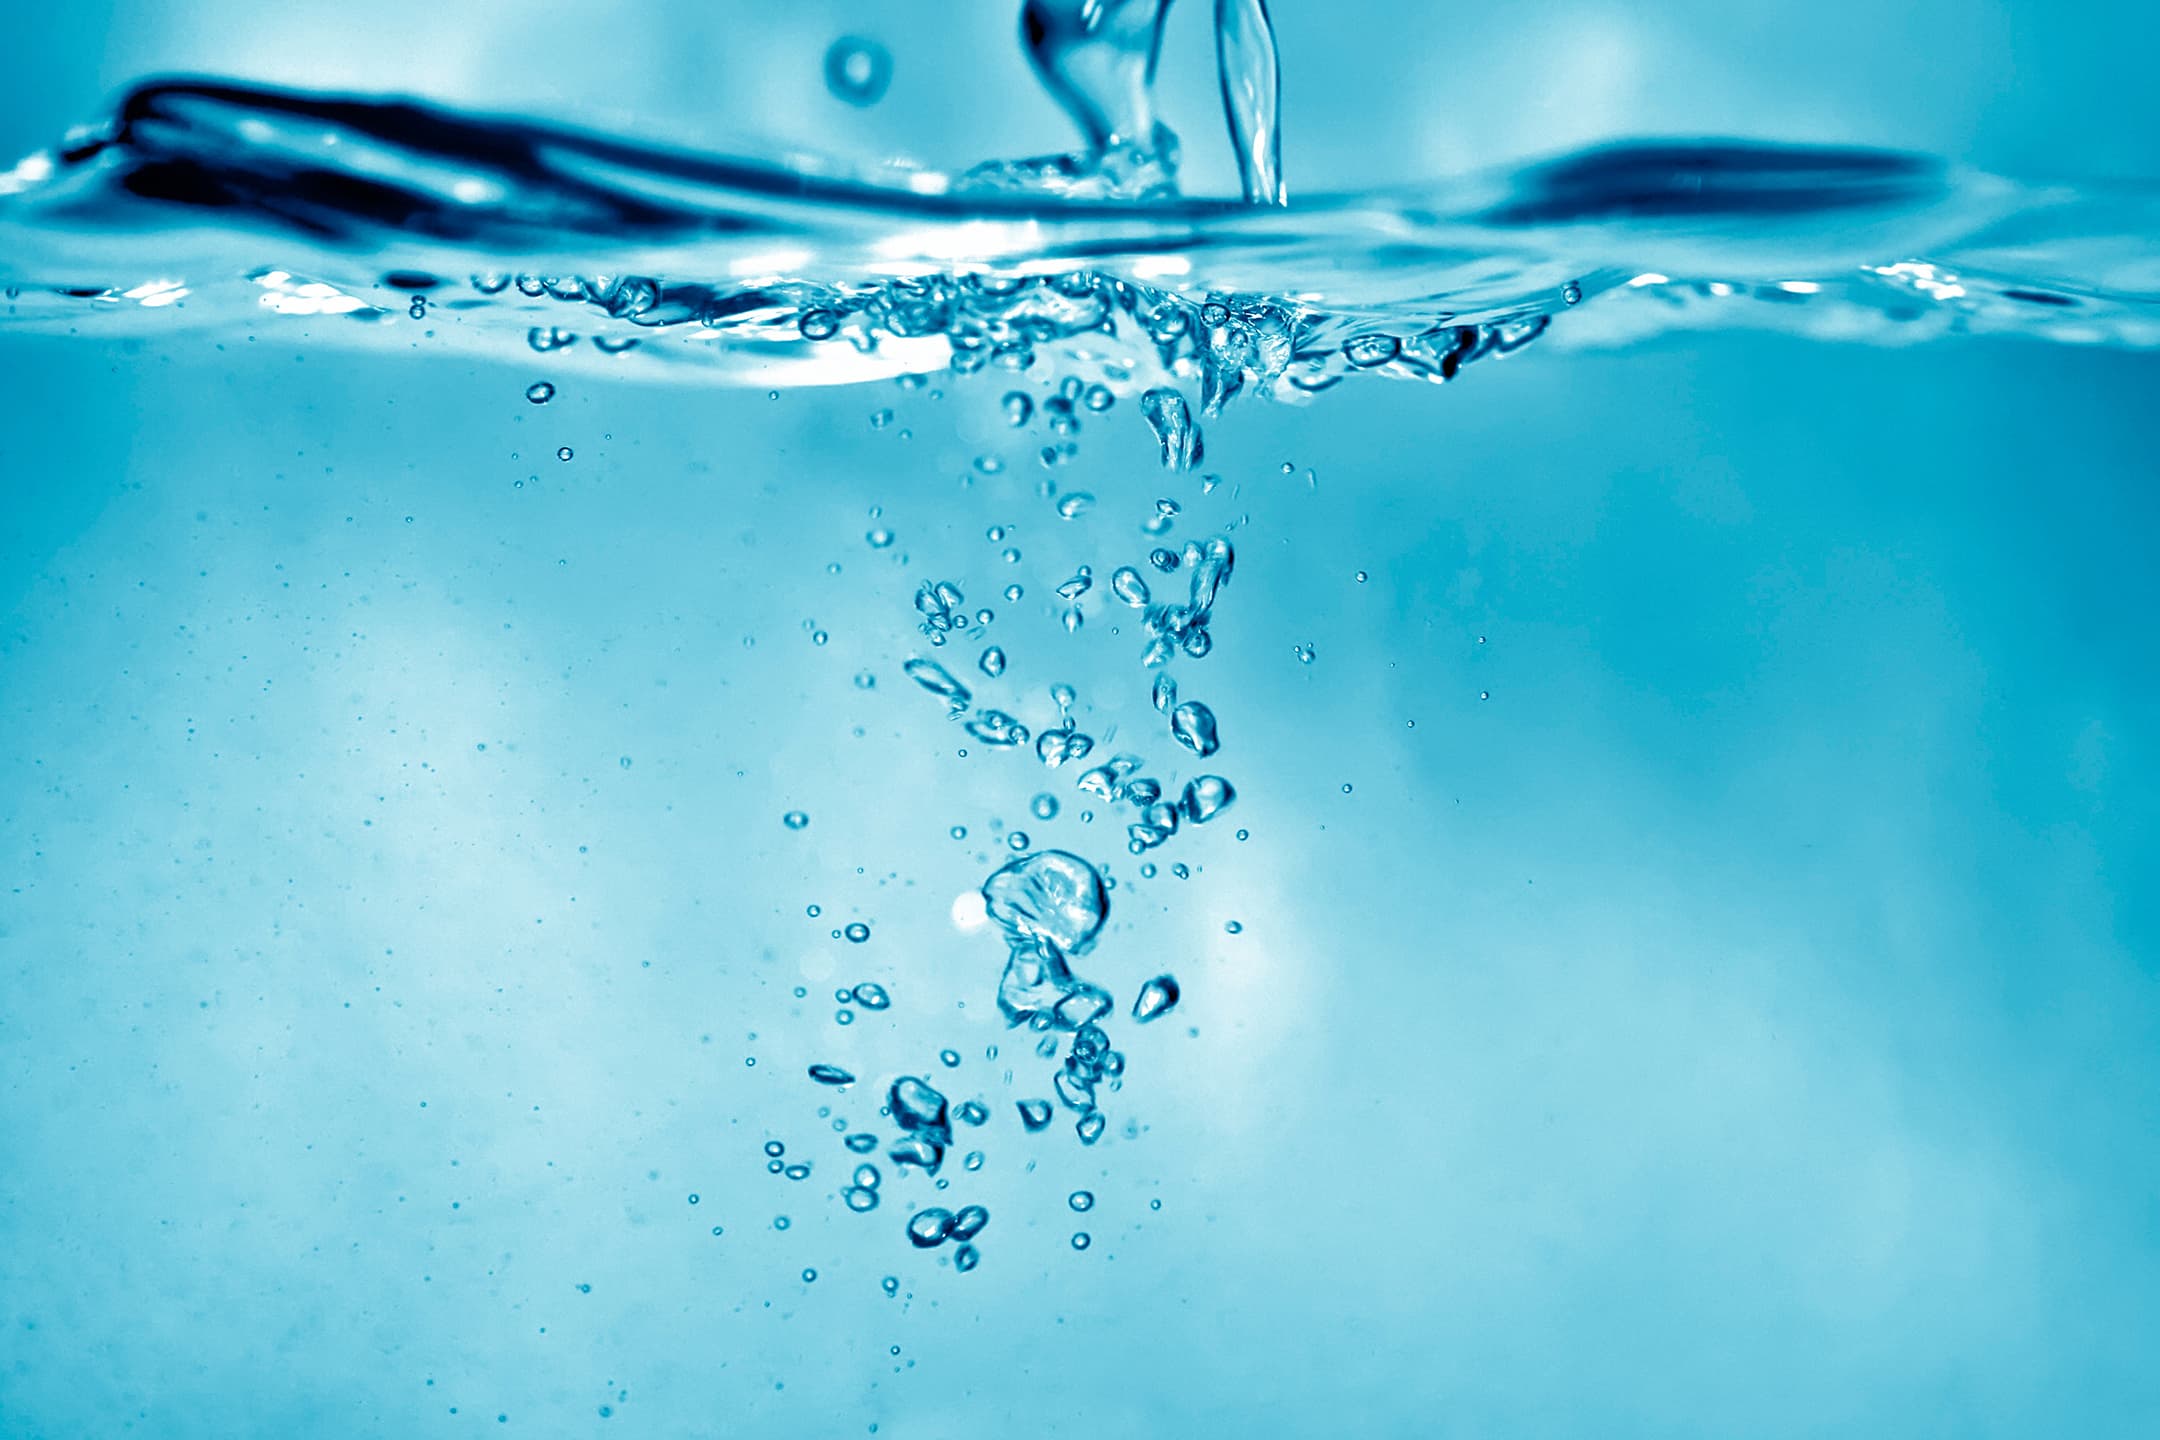 Abbildung: Darstellung von Wasser und Luftbläschen